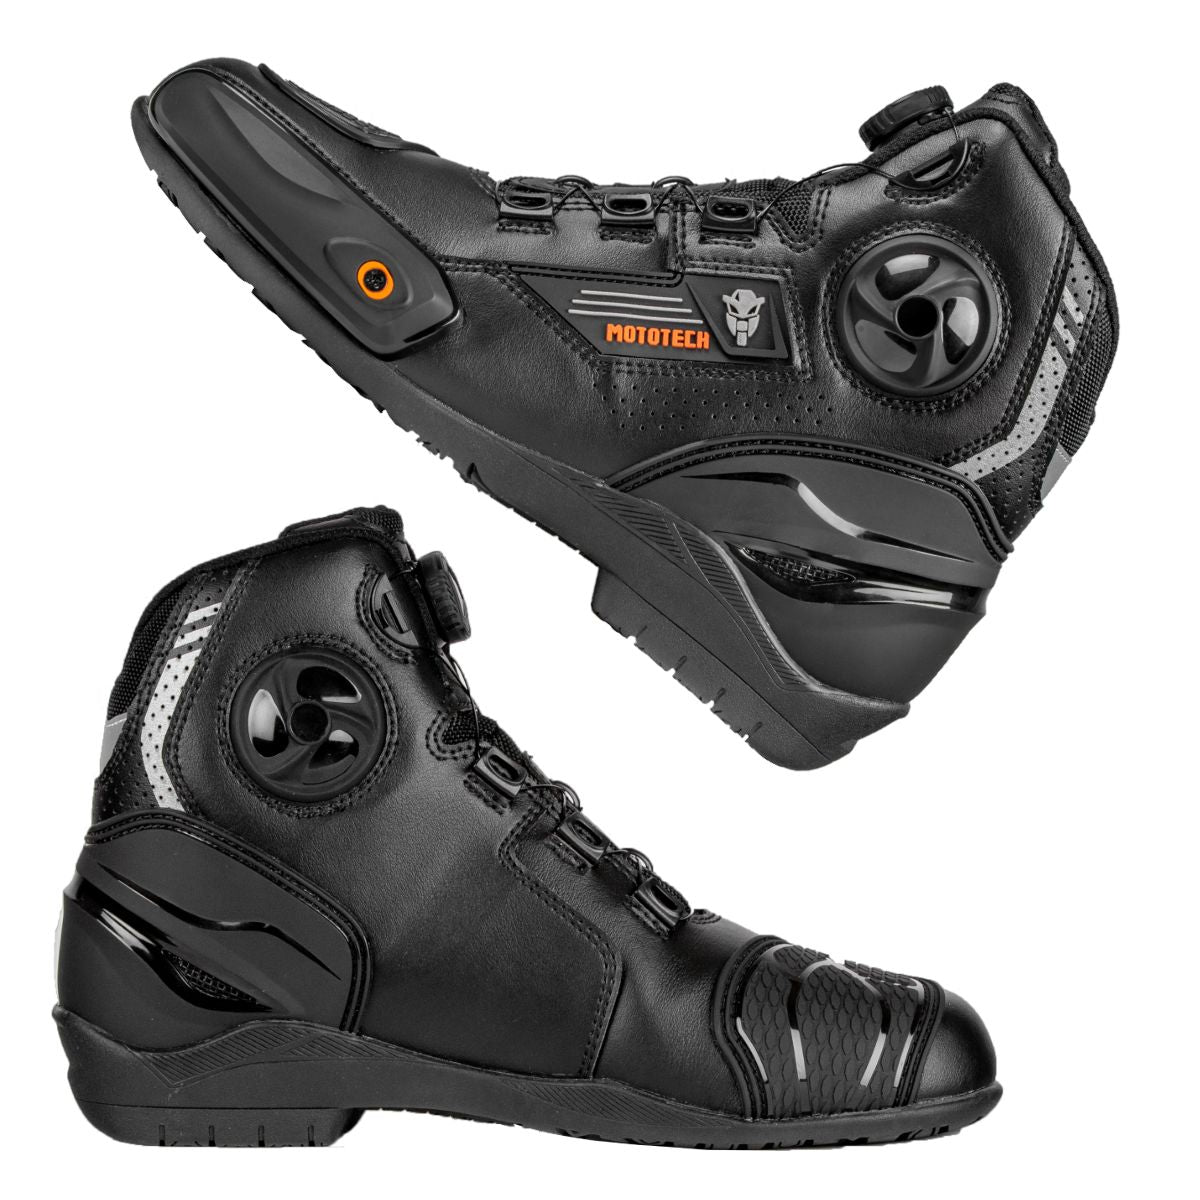 Asphalt v3 Short Riding Boots - with Moz Lacing System